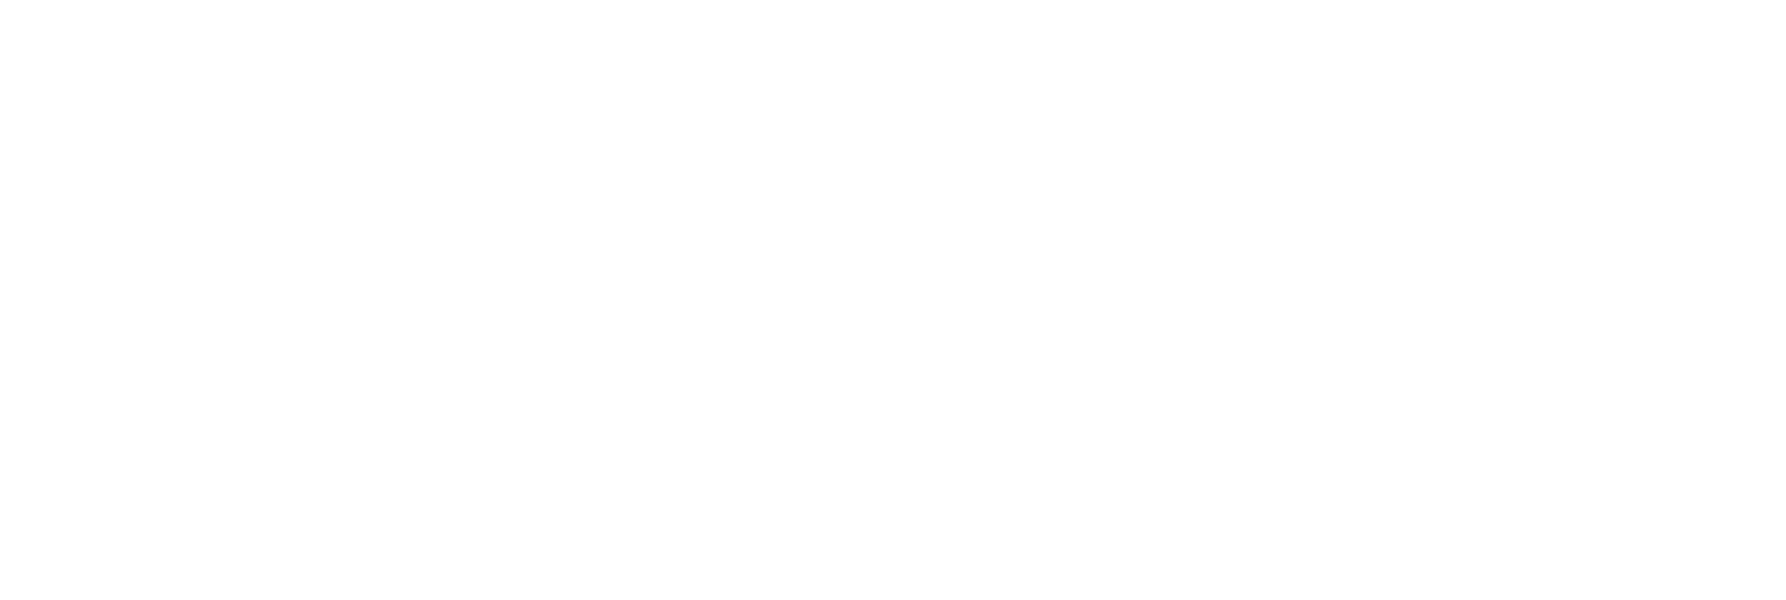 Facultad de Derecho – Universidad Finis Terrae Logo